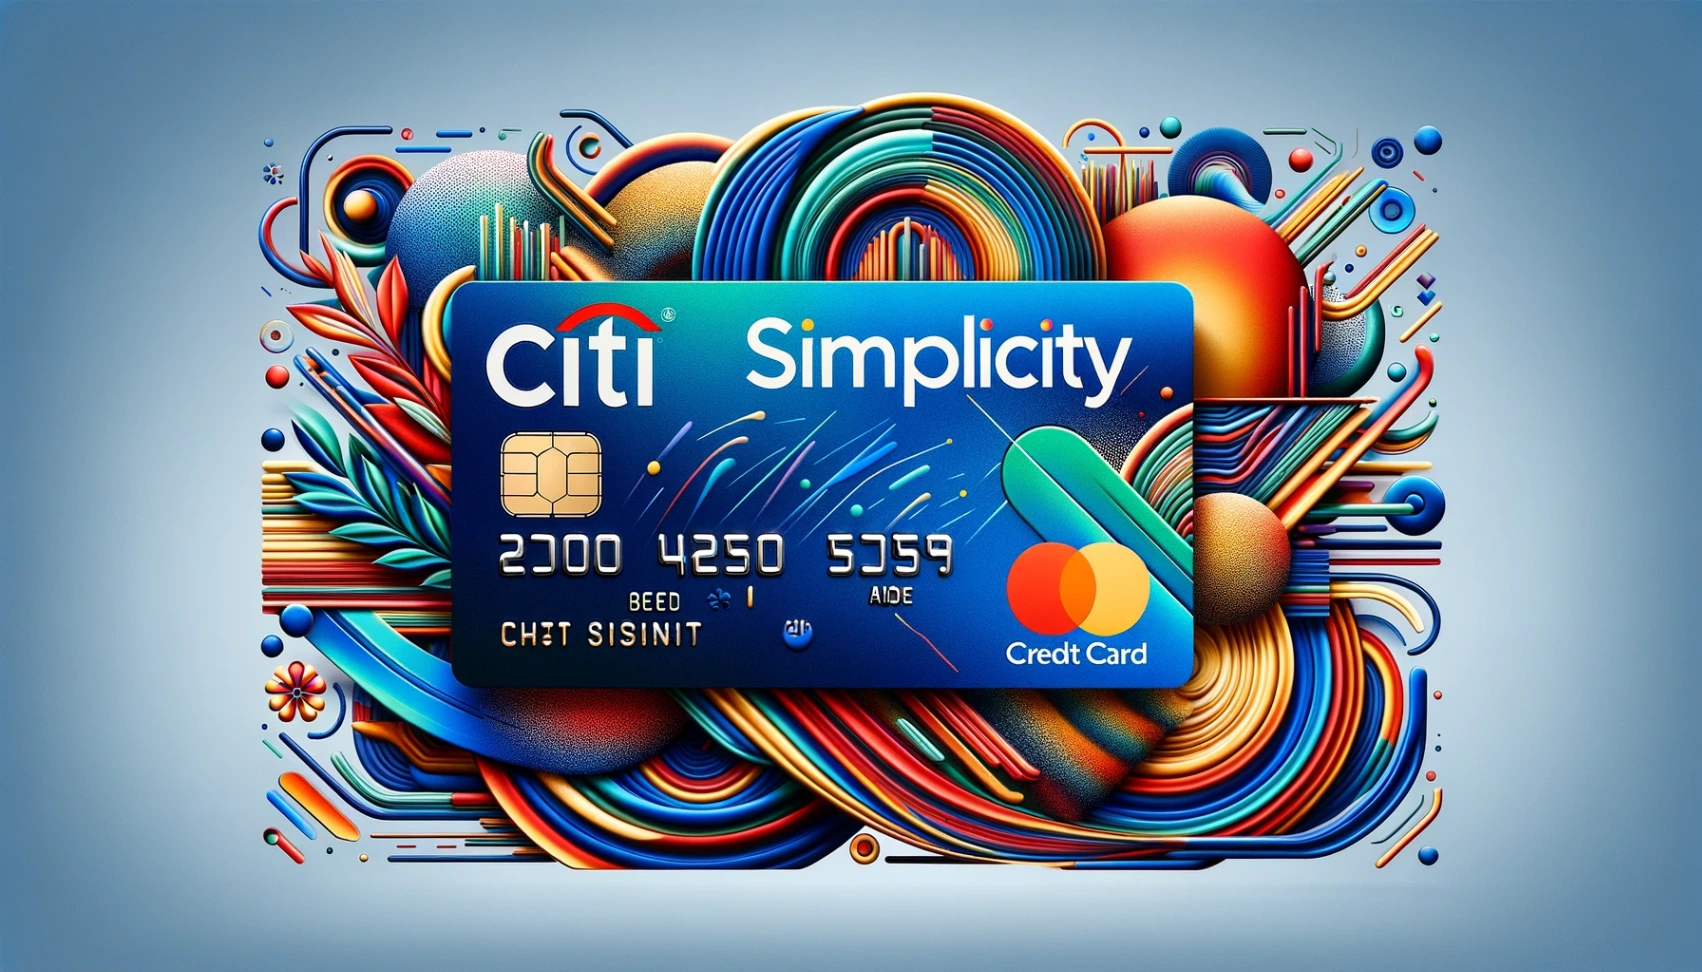 Tarjeta de crédito Citi Simplicity: Aprende cómo solicitar en línea